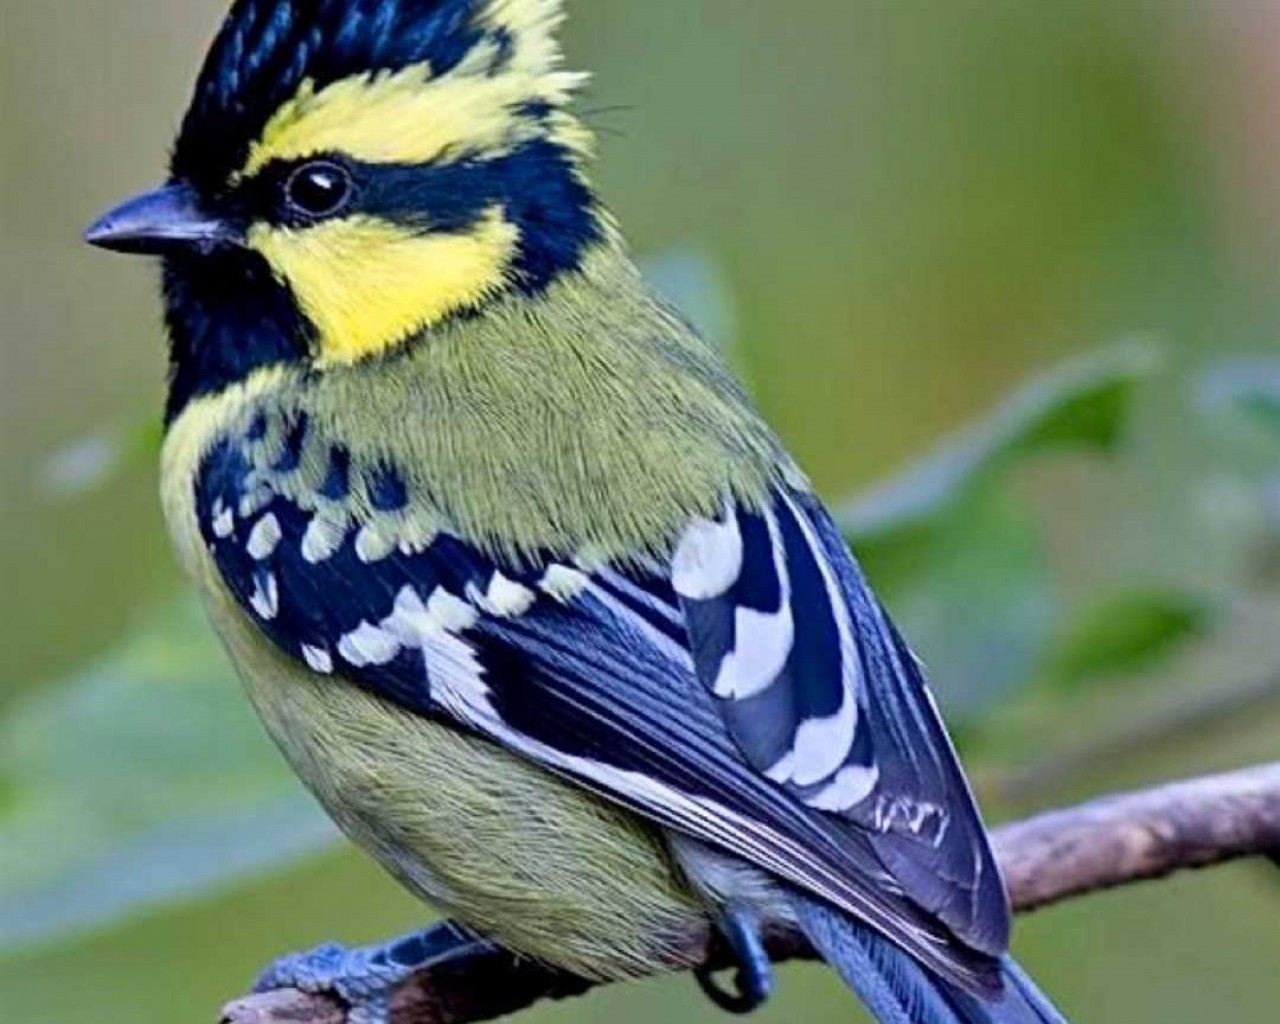 Все, что вы хотели знать о птицах - их разнообразие, особенности и важность в природе